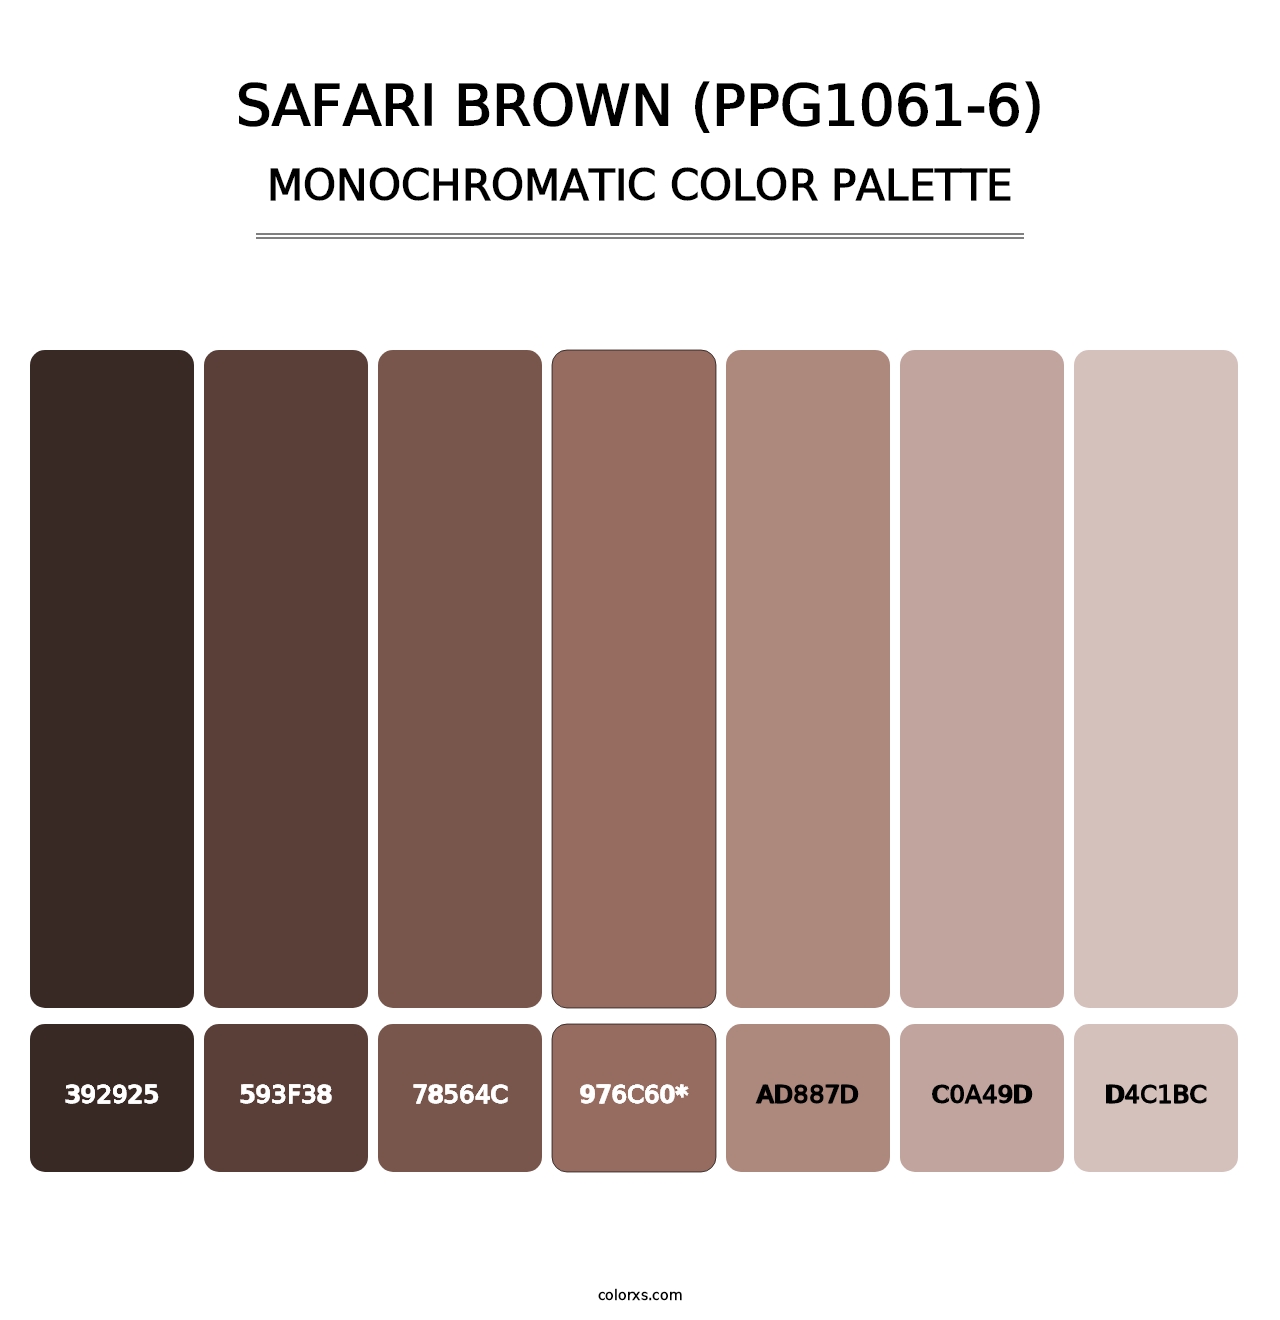 Safari Brown (PPG1061-6) - Monochromatic Color Palette